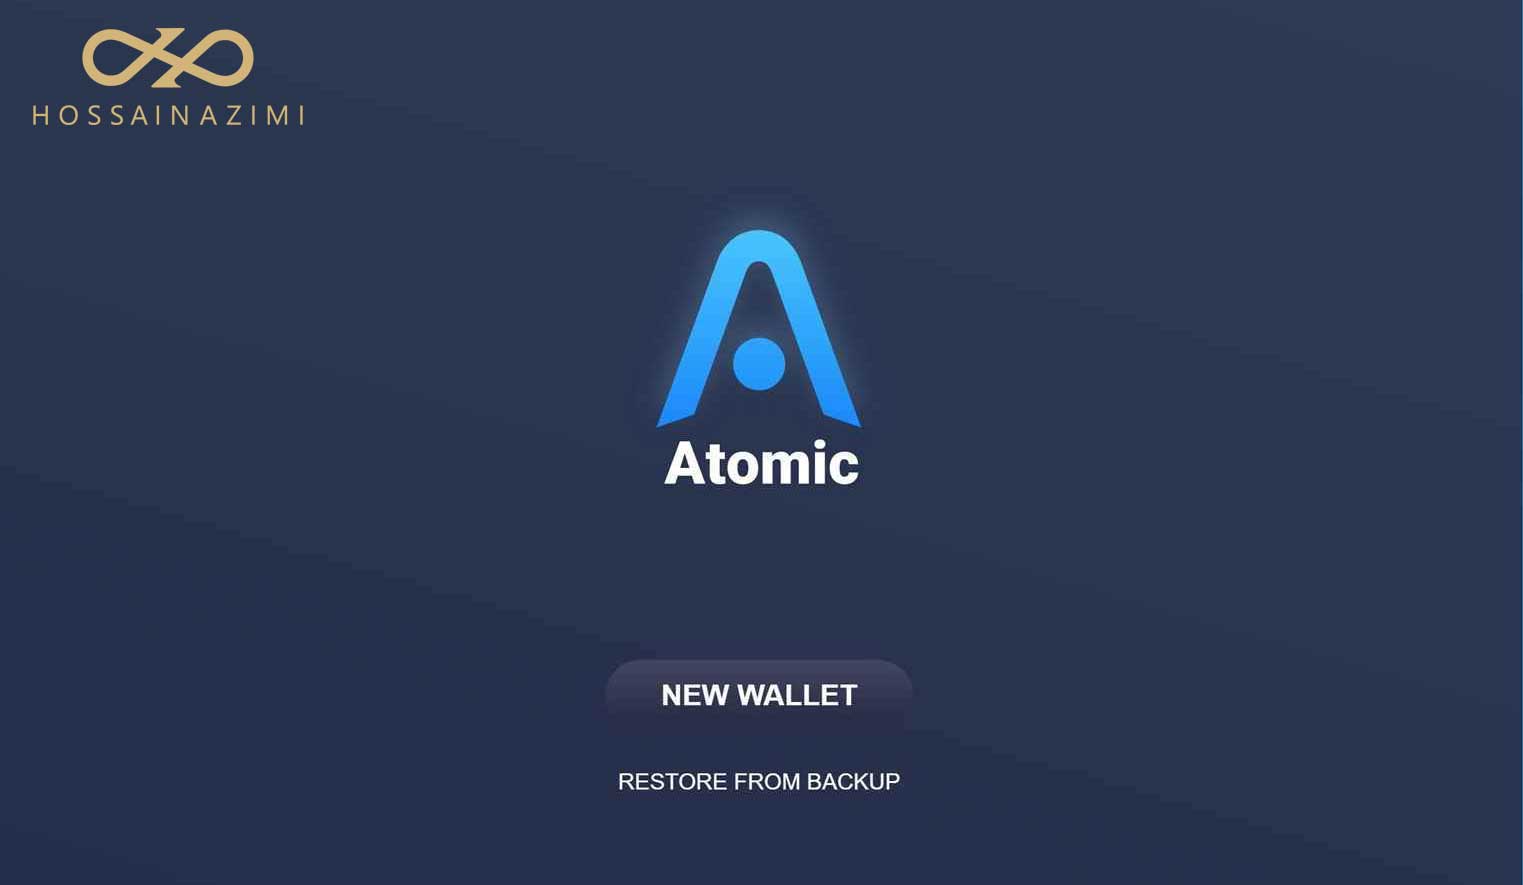 Atomic wallet